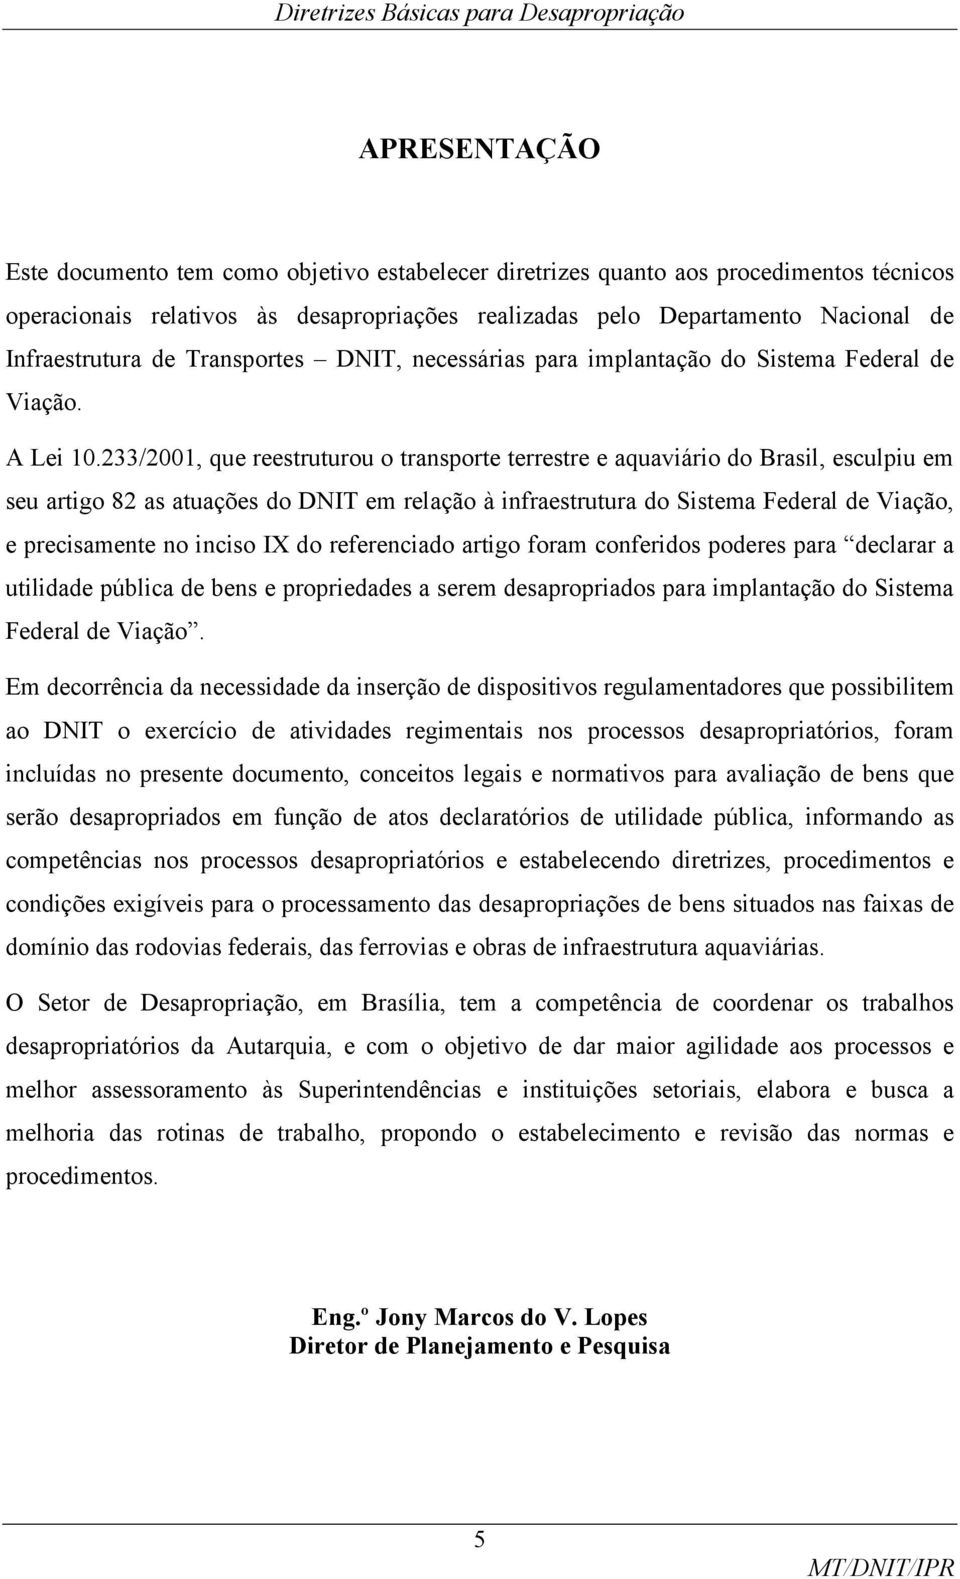 233/2001, que reestruturou o transporte terrestre e aquaviário do Brasil, esculpiu em seu artigo 82 as atuações do DNIT em relação à infraestrutura do Sistema Federal de Viação, e precisamente no